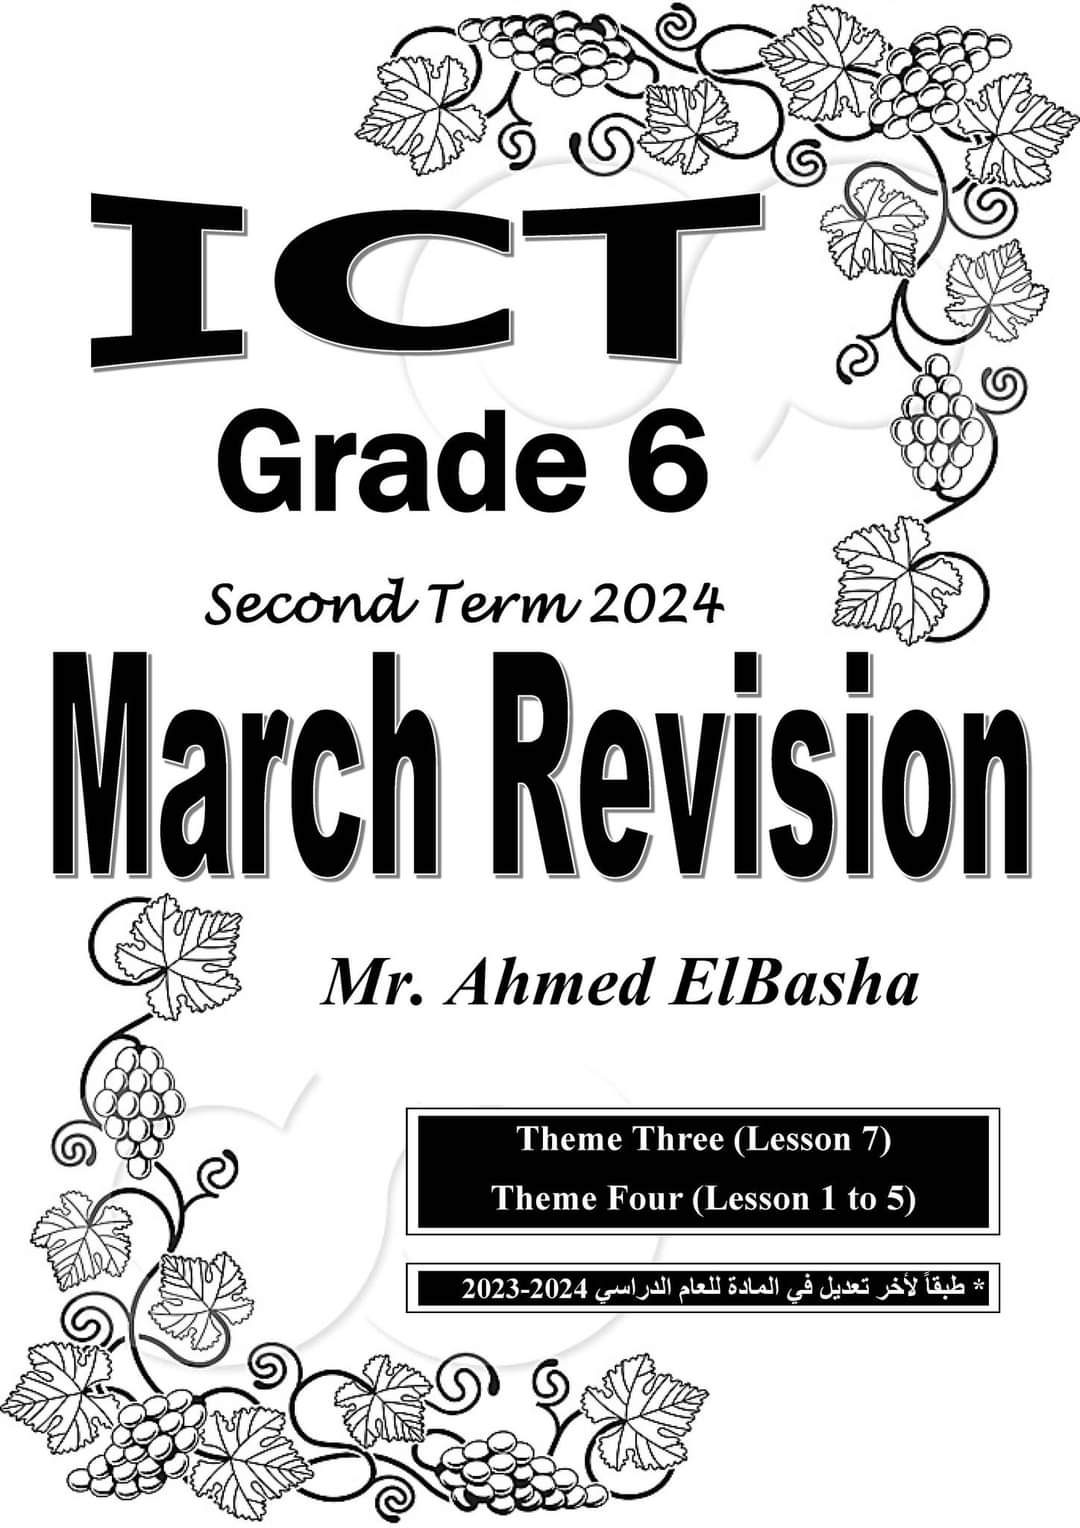 ملزمة مراجعة مقرر مارس ICT الصف السادس الابتدائي لمستر احمد الباشا